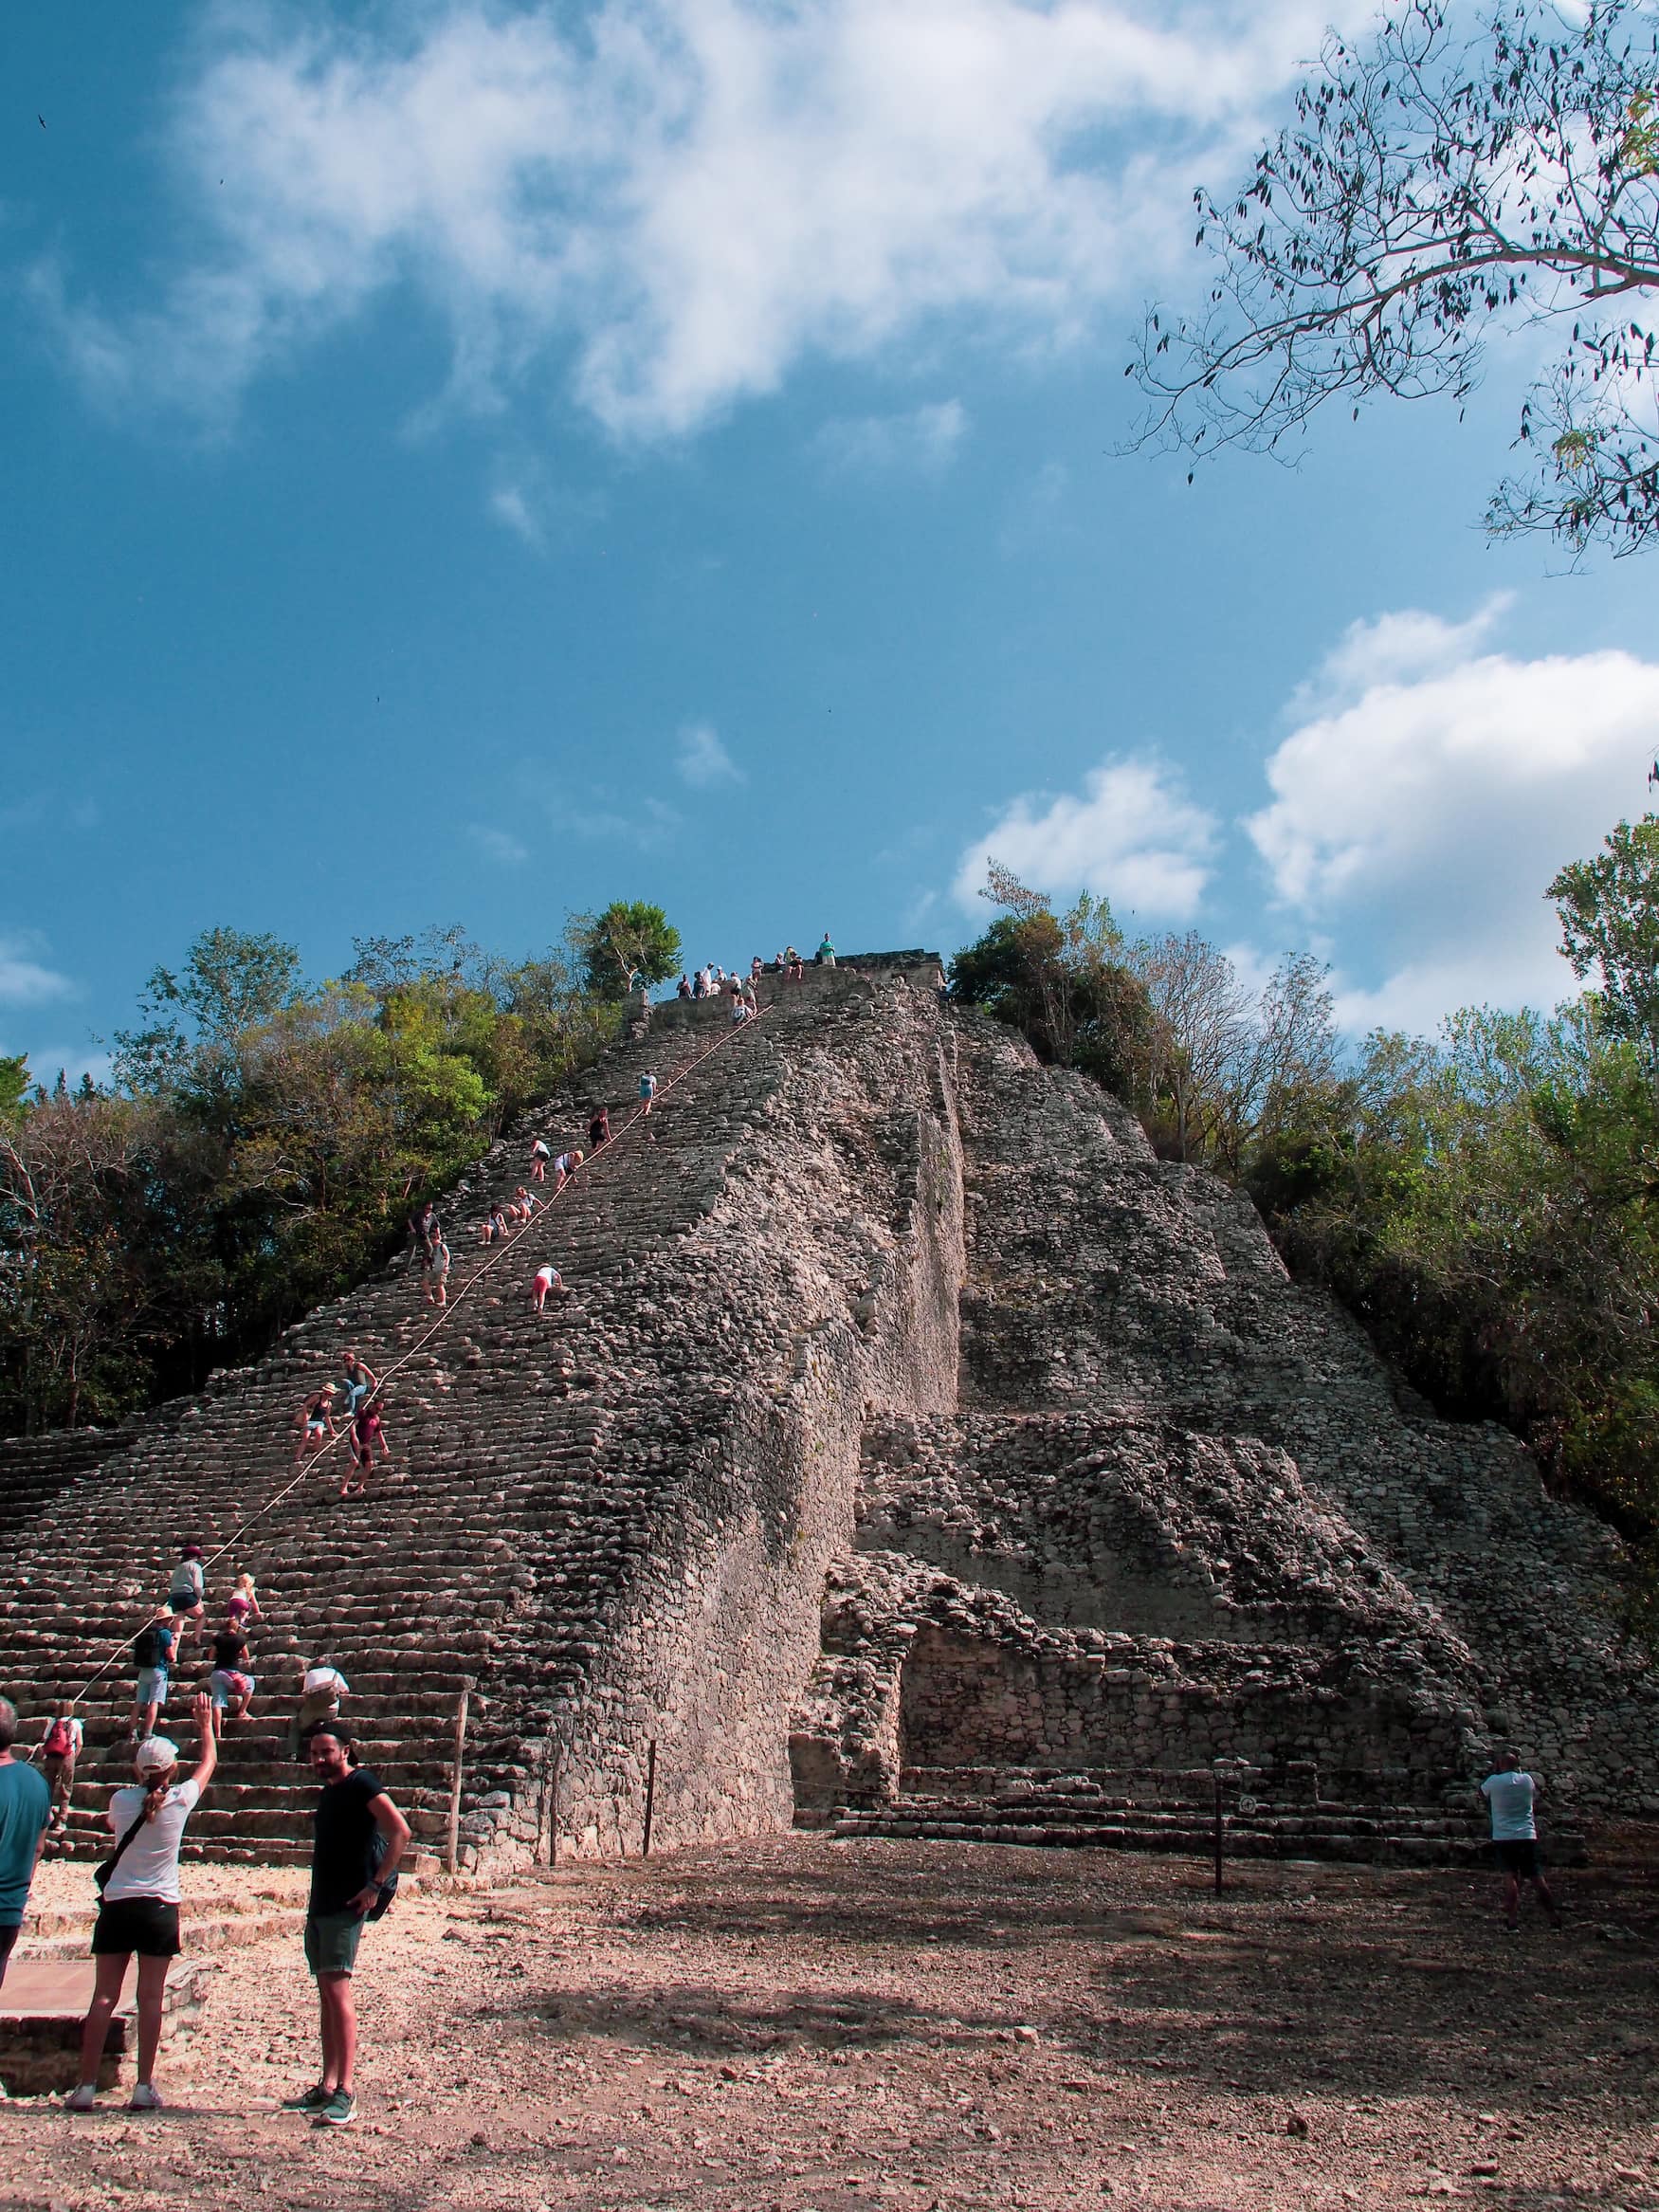 Menschen klettern bei Sonnenschein auf die Pyramide in Coba, Mexiko